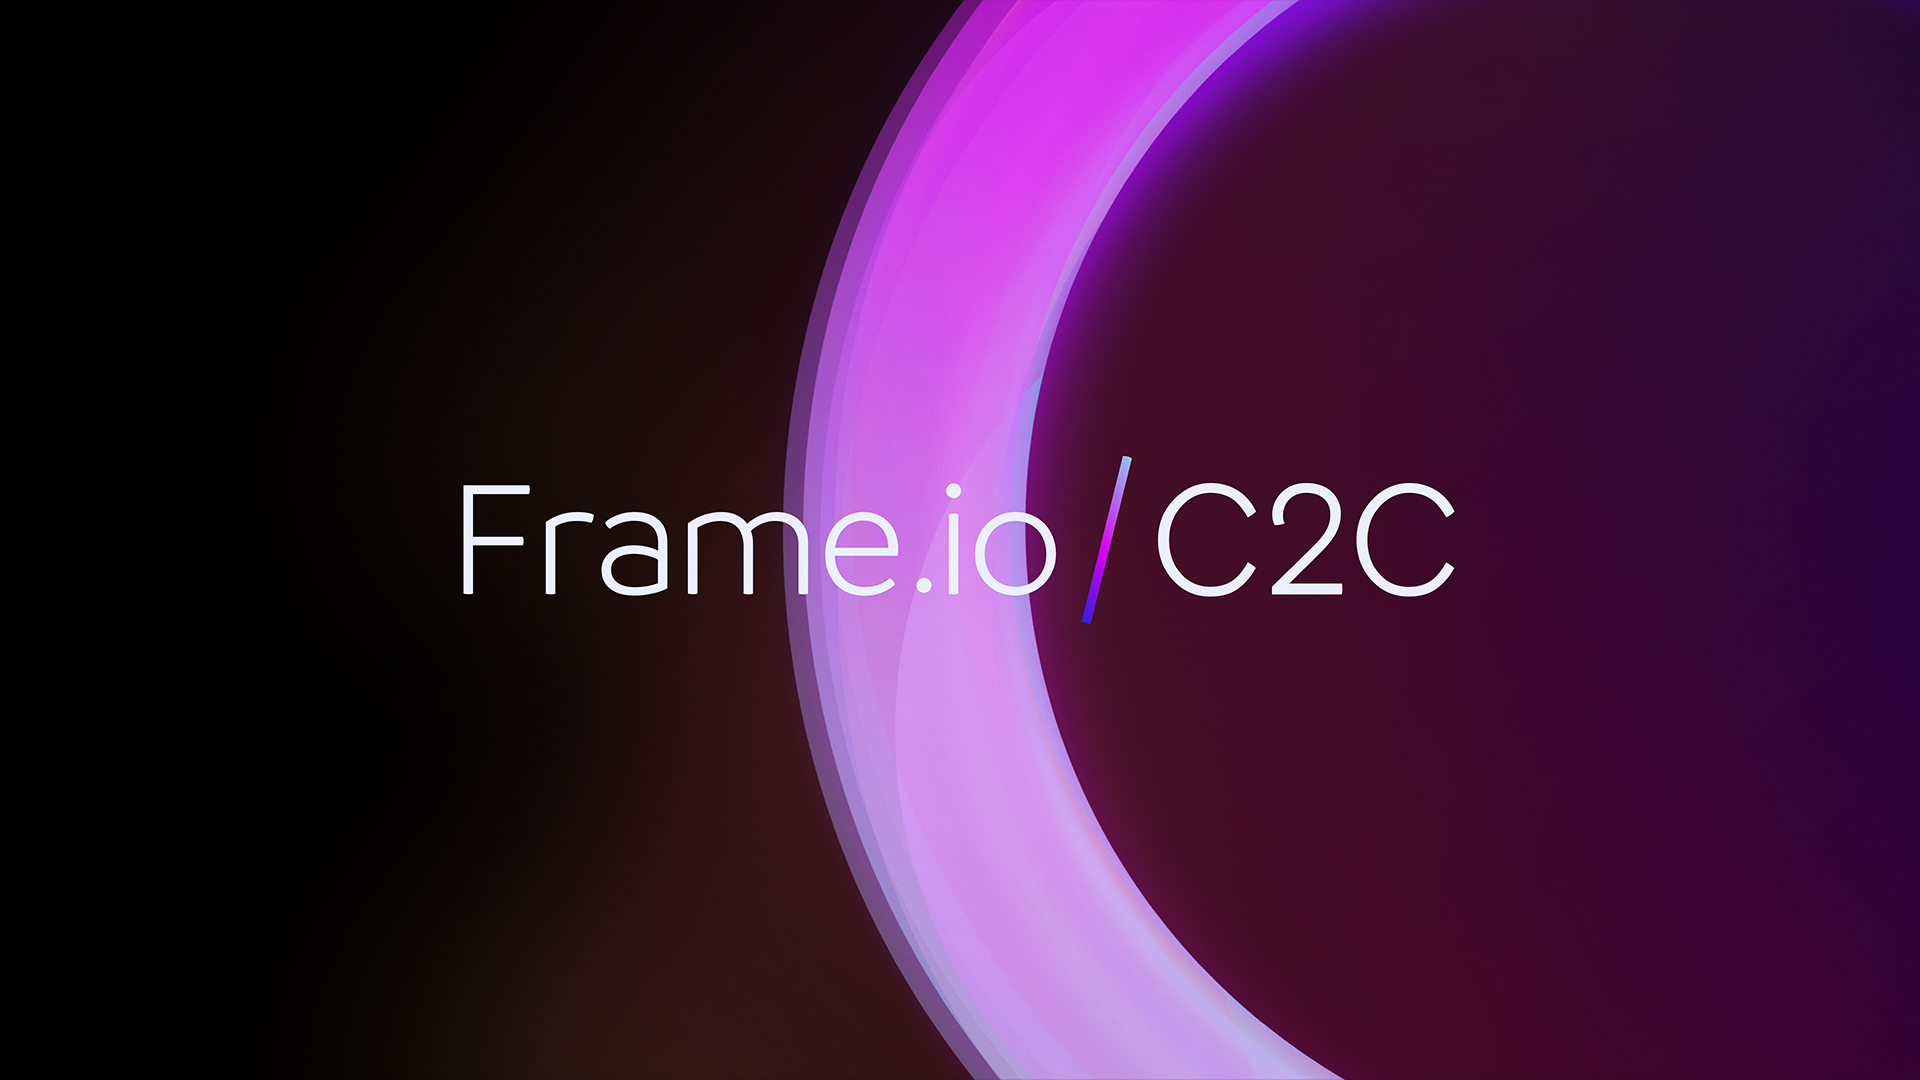 Introducing Frame.io C2C